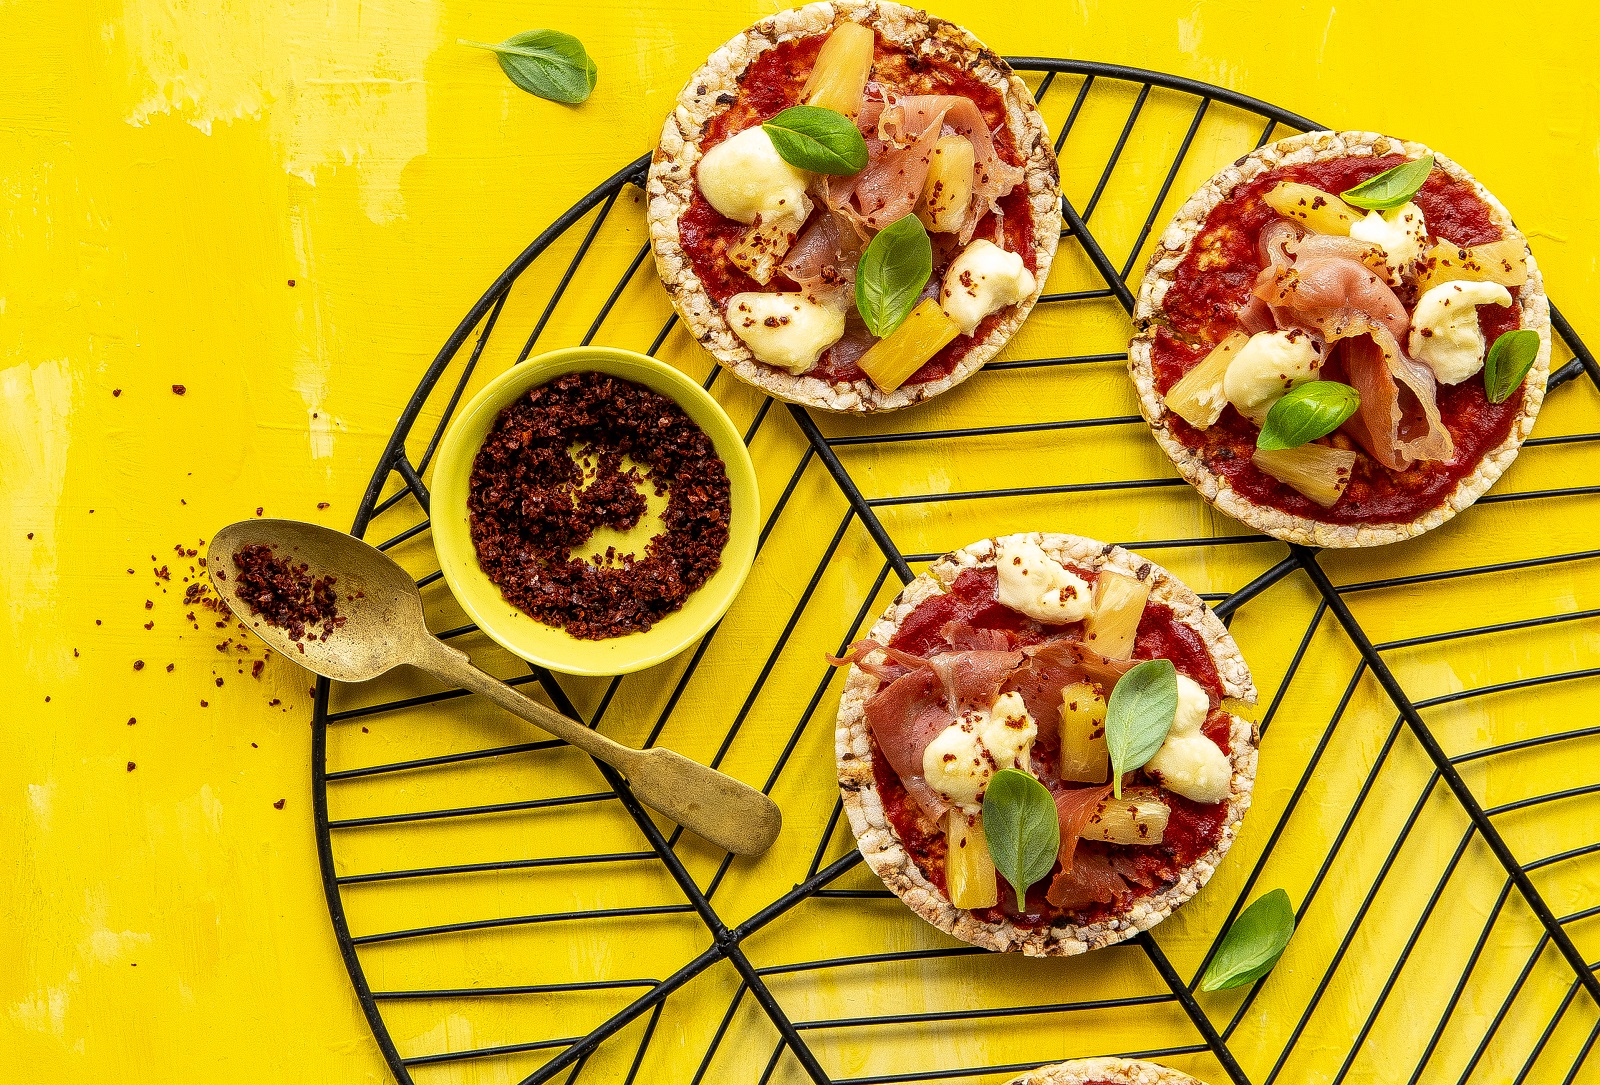 Ham & Prosciutto Pizza using Corn Thins slices